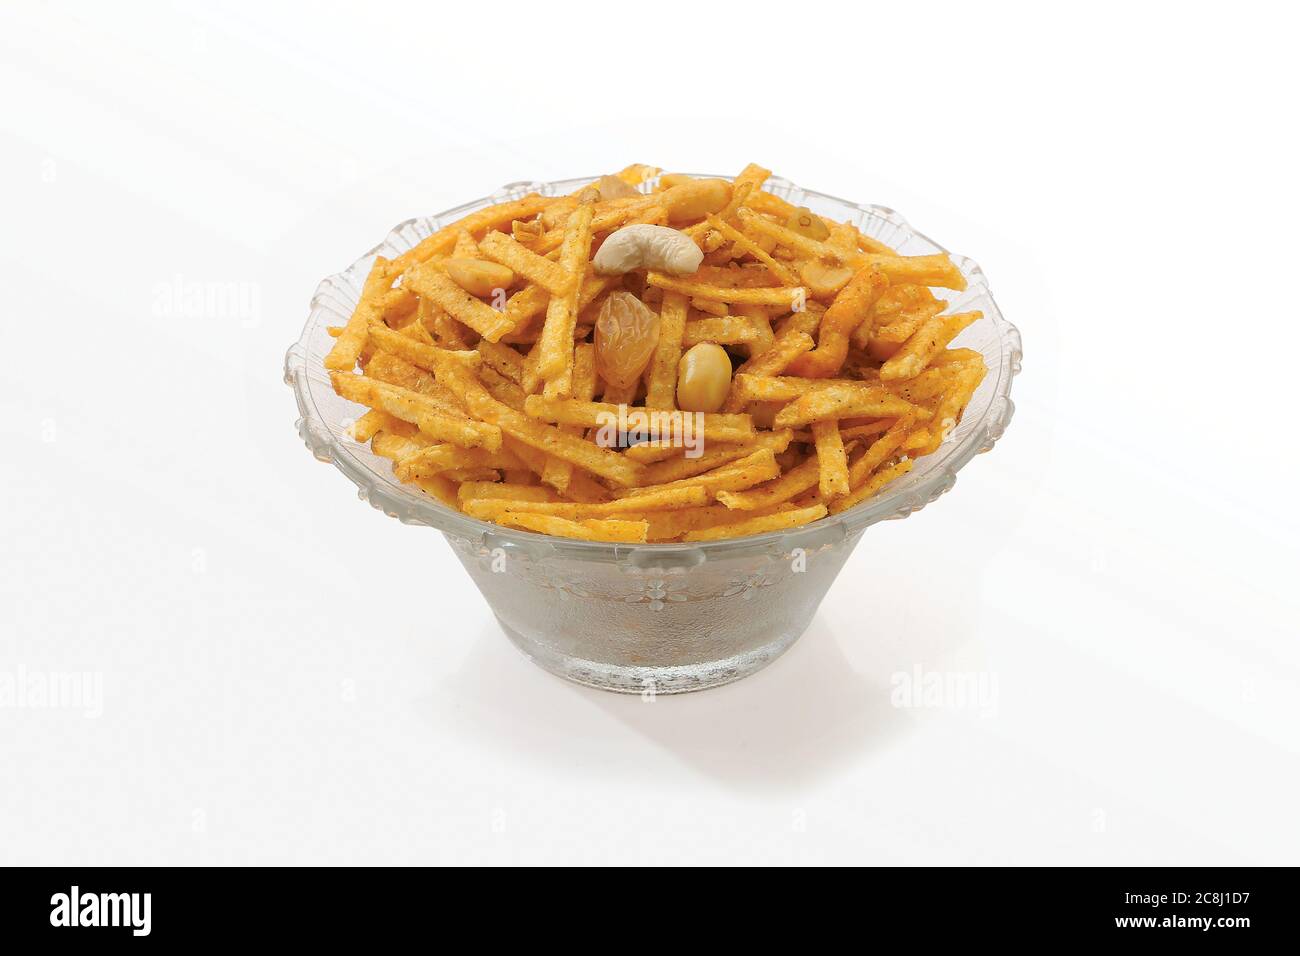 Gebraten und würzig süß Farali chevdo, chivda, chewada ist ein sehr beliebter Gujarati Snack, weiße Schüssel auf weißem Hintergrund, Beutel Verpackung gemeinsame Straße sna Stockfoto